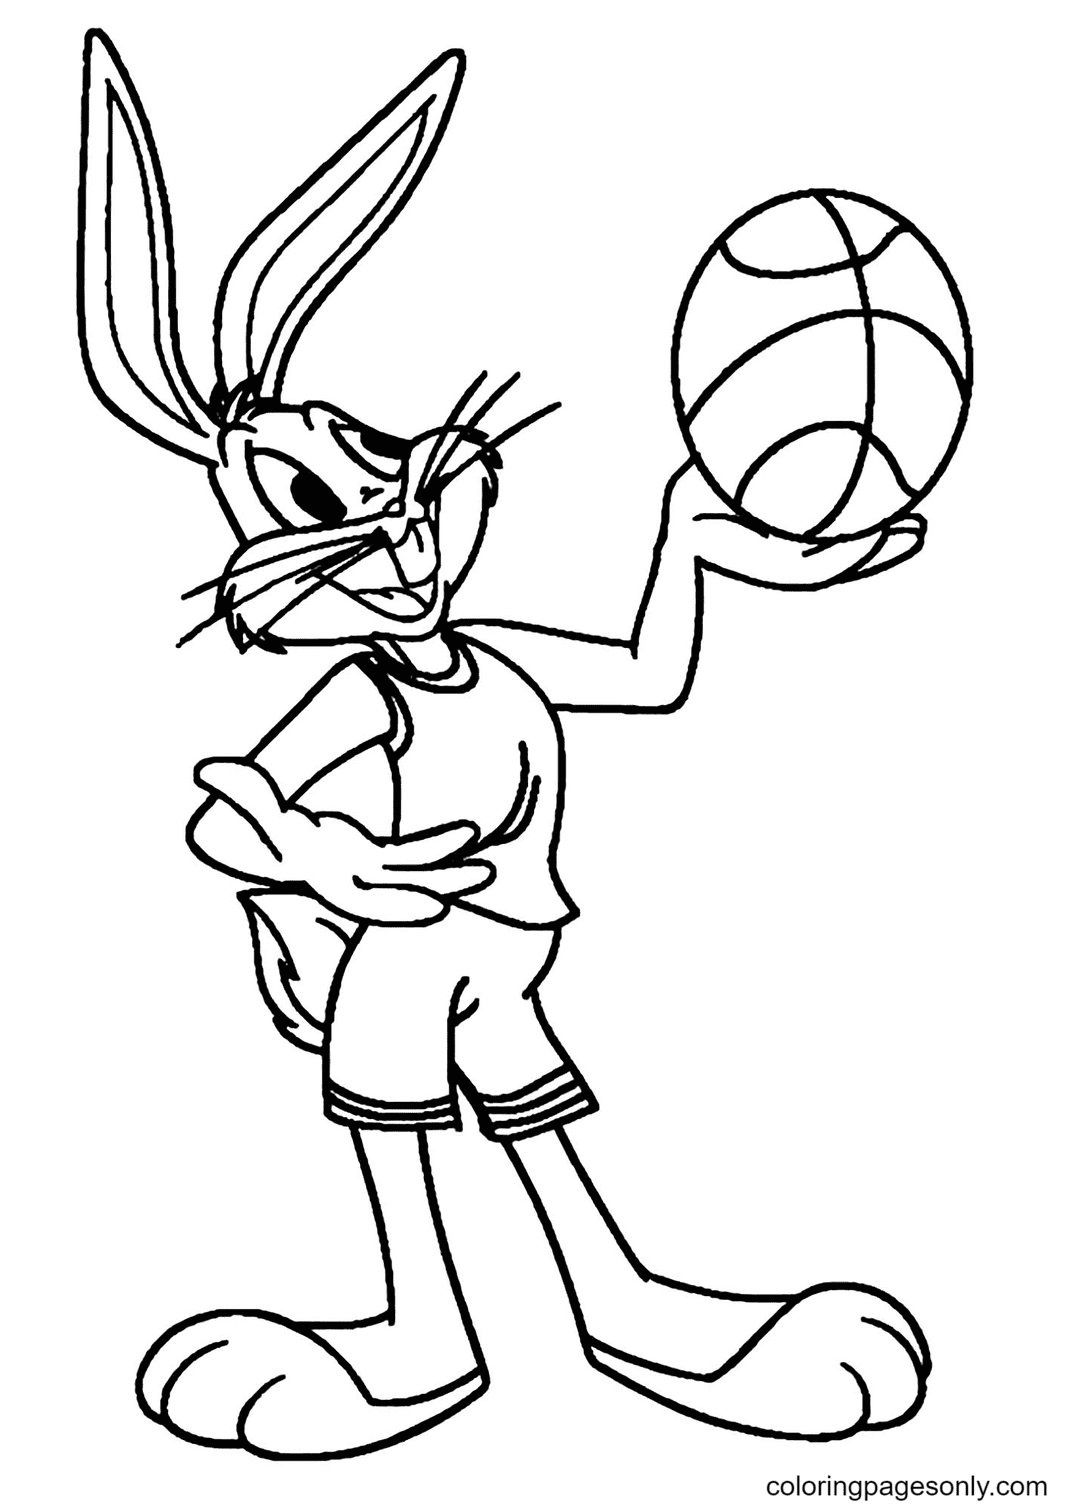 Bugs Bunny sosteniendo una pelota de baloncesto para colorear